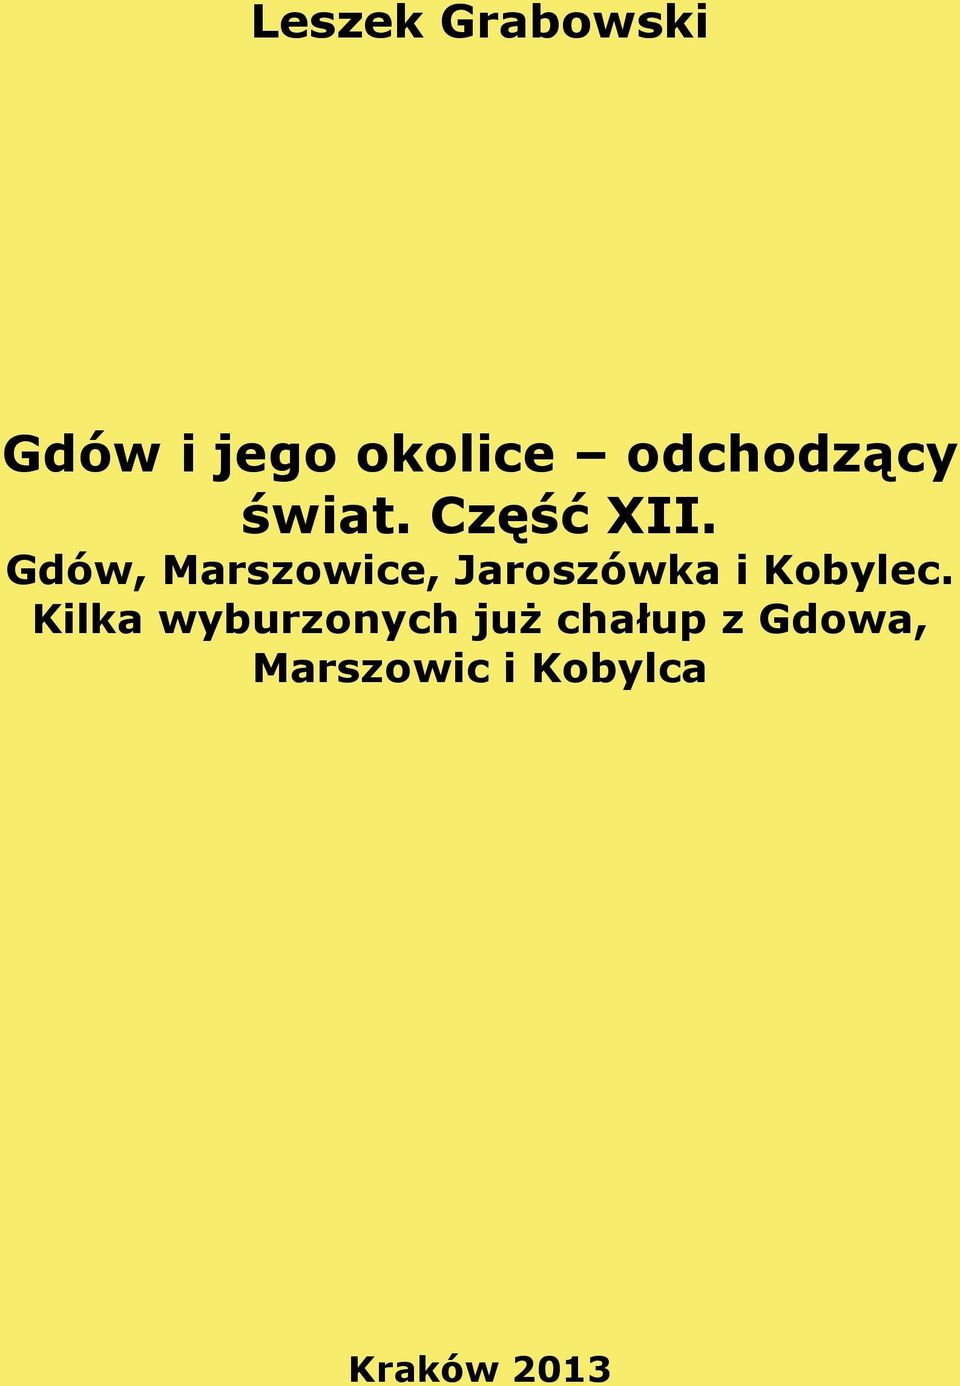 Gdów, Marszowice, Jaroszówka i Kobylec.